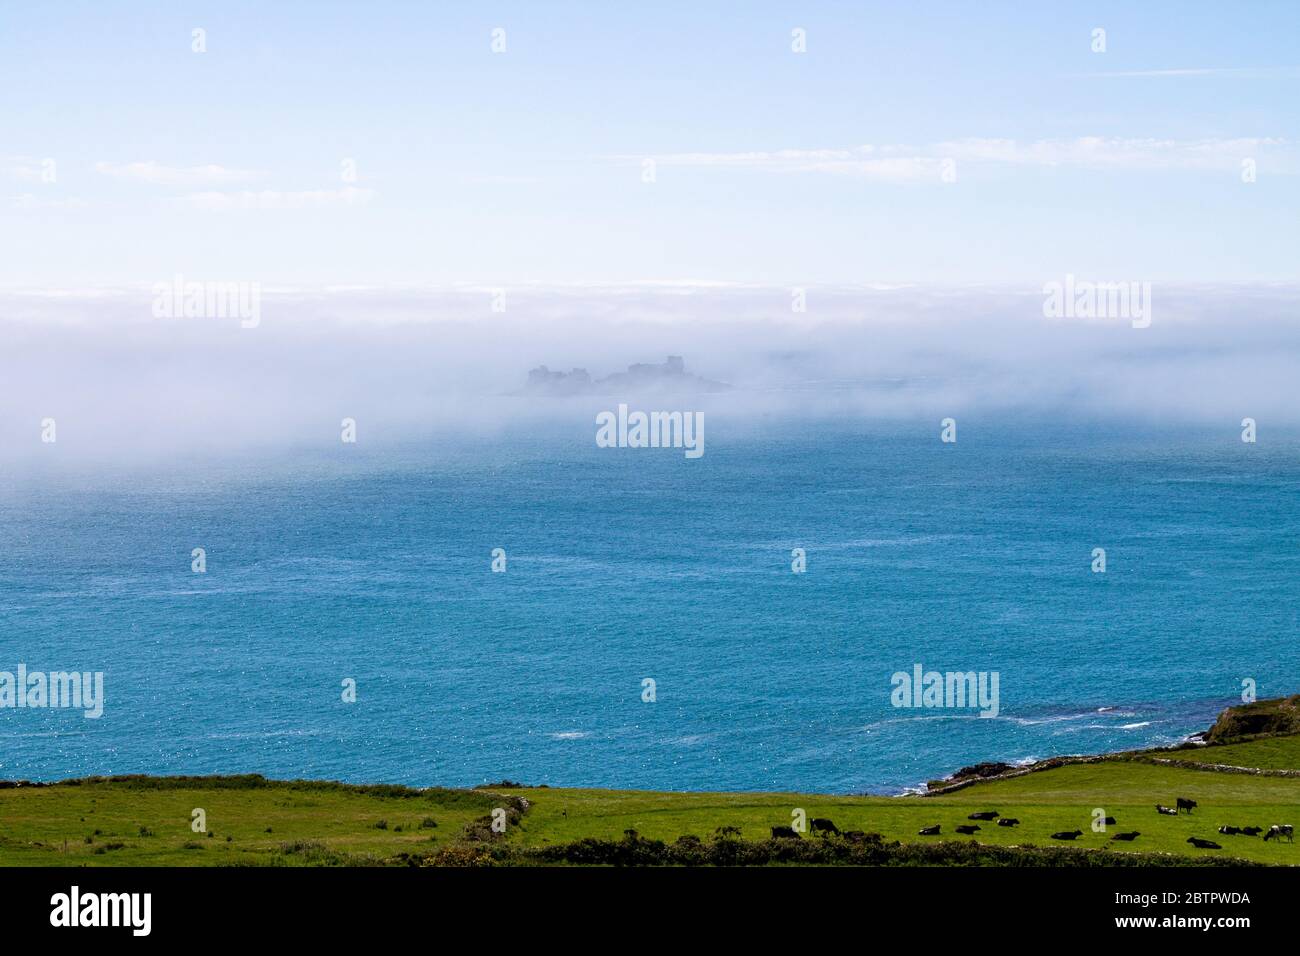 Sea mist or fog bank drifting over the coast. Stock Photo